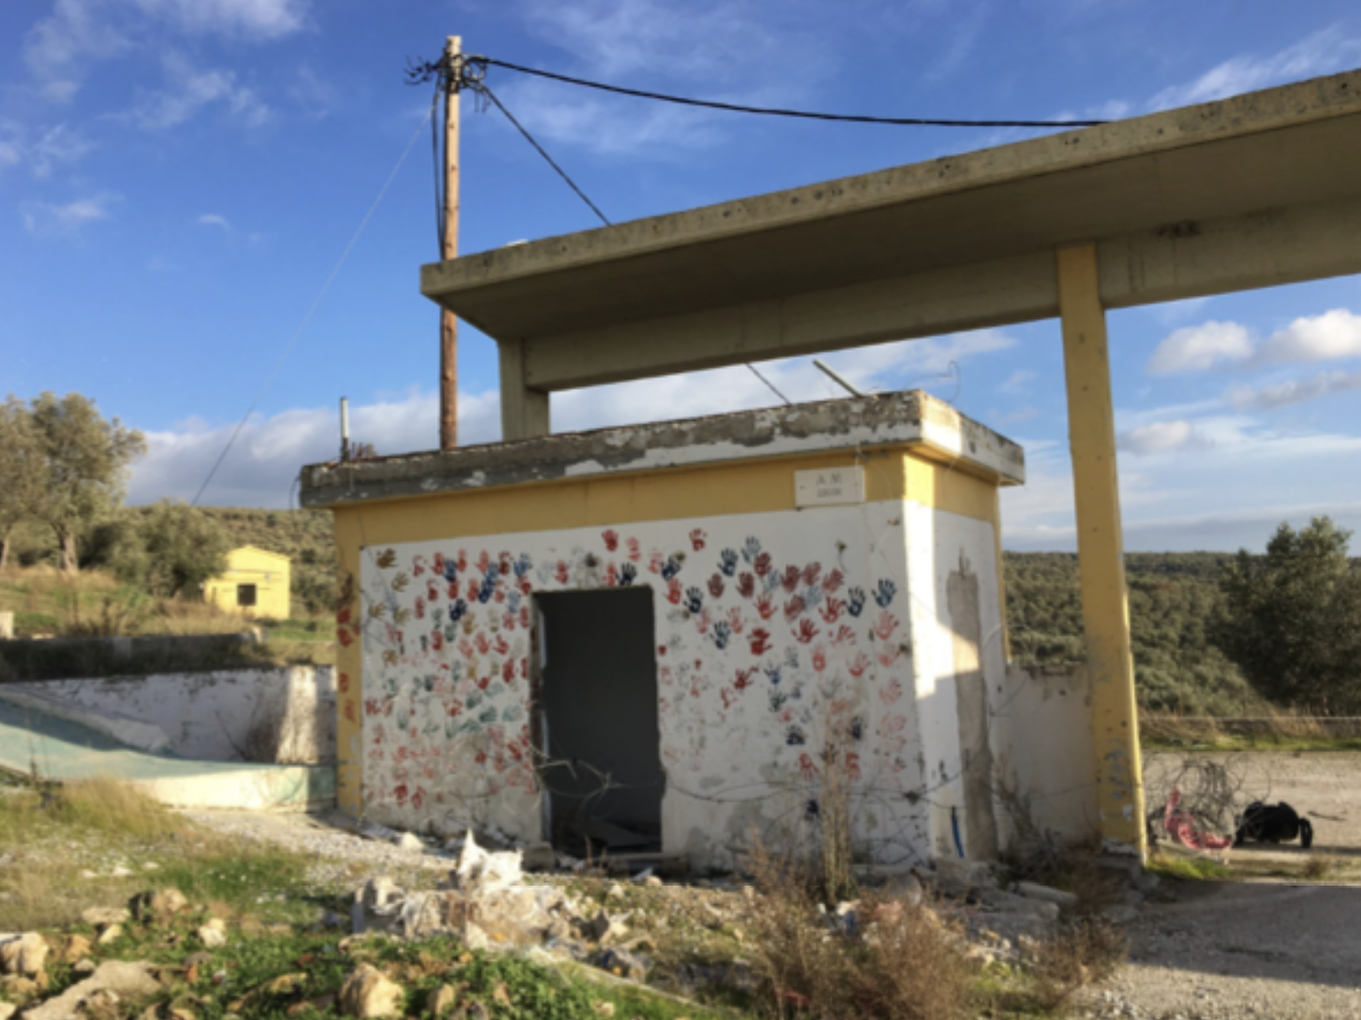 Lesvos: Entrance to the former Moria Camp